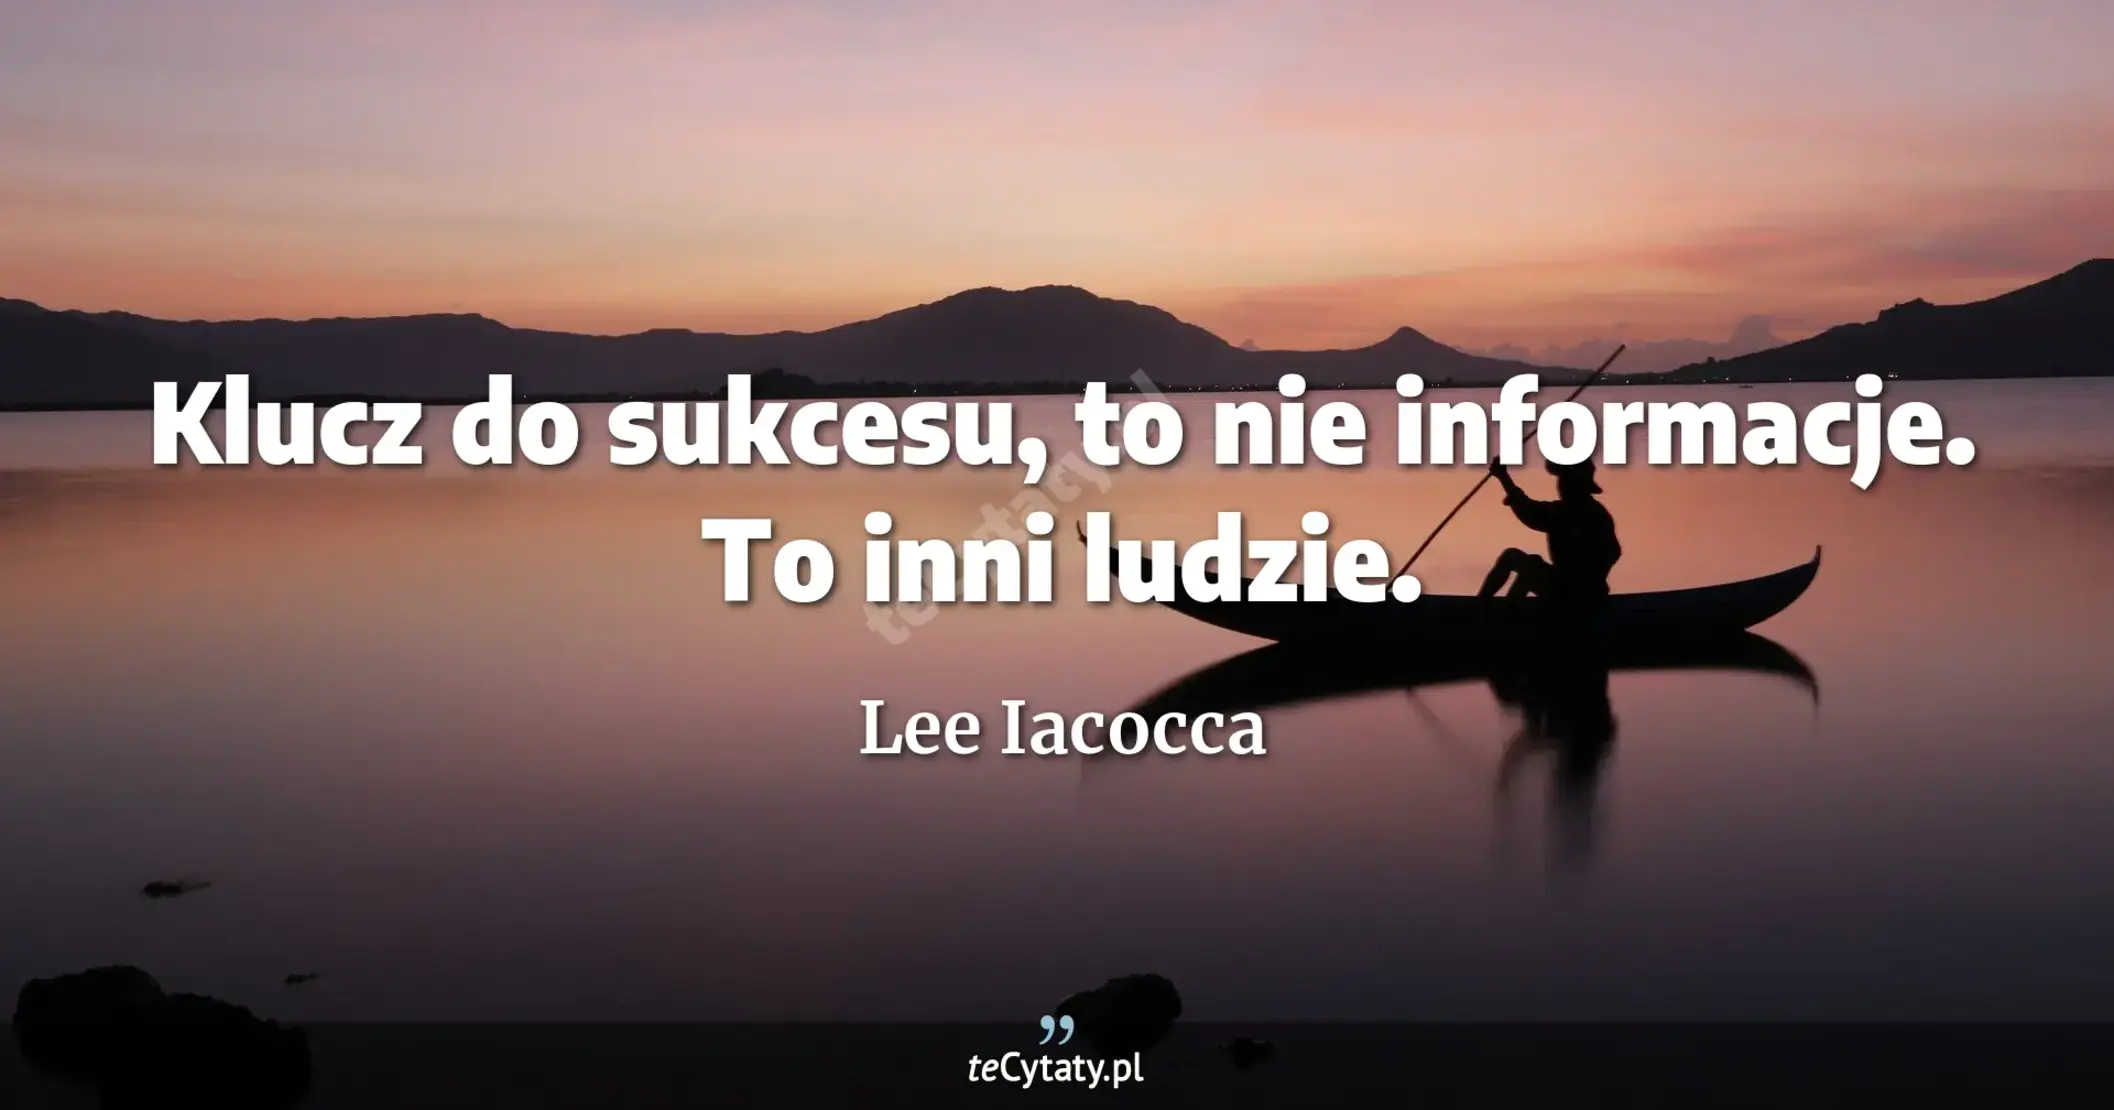 Klucz do sukcesu, to nie informacje. To inni ludzie. - Lee Iacocca